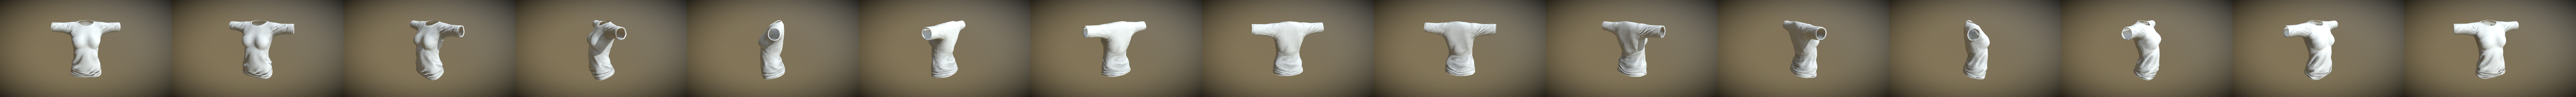 T-Pose de roupa íntima de homem chinês Modelo 3D - TurboSquid 1868474